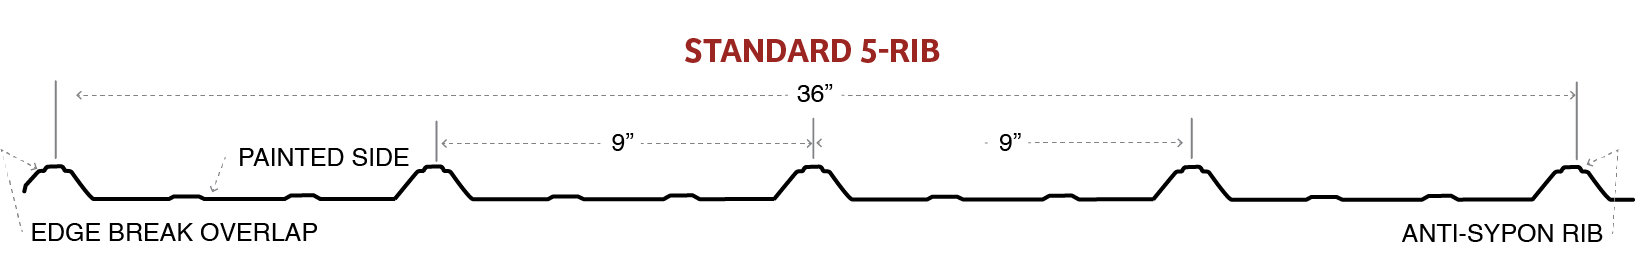 Standard 5-Rib